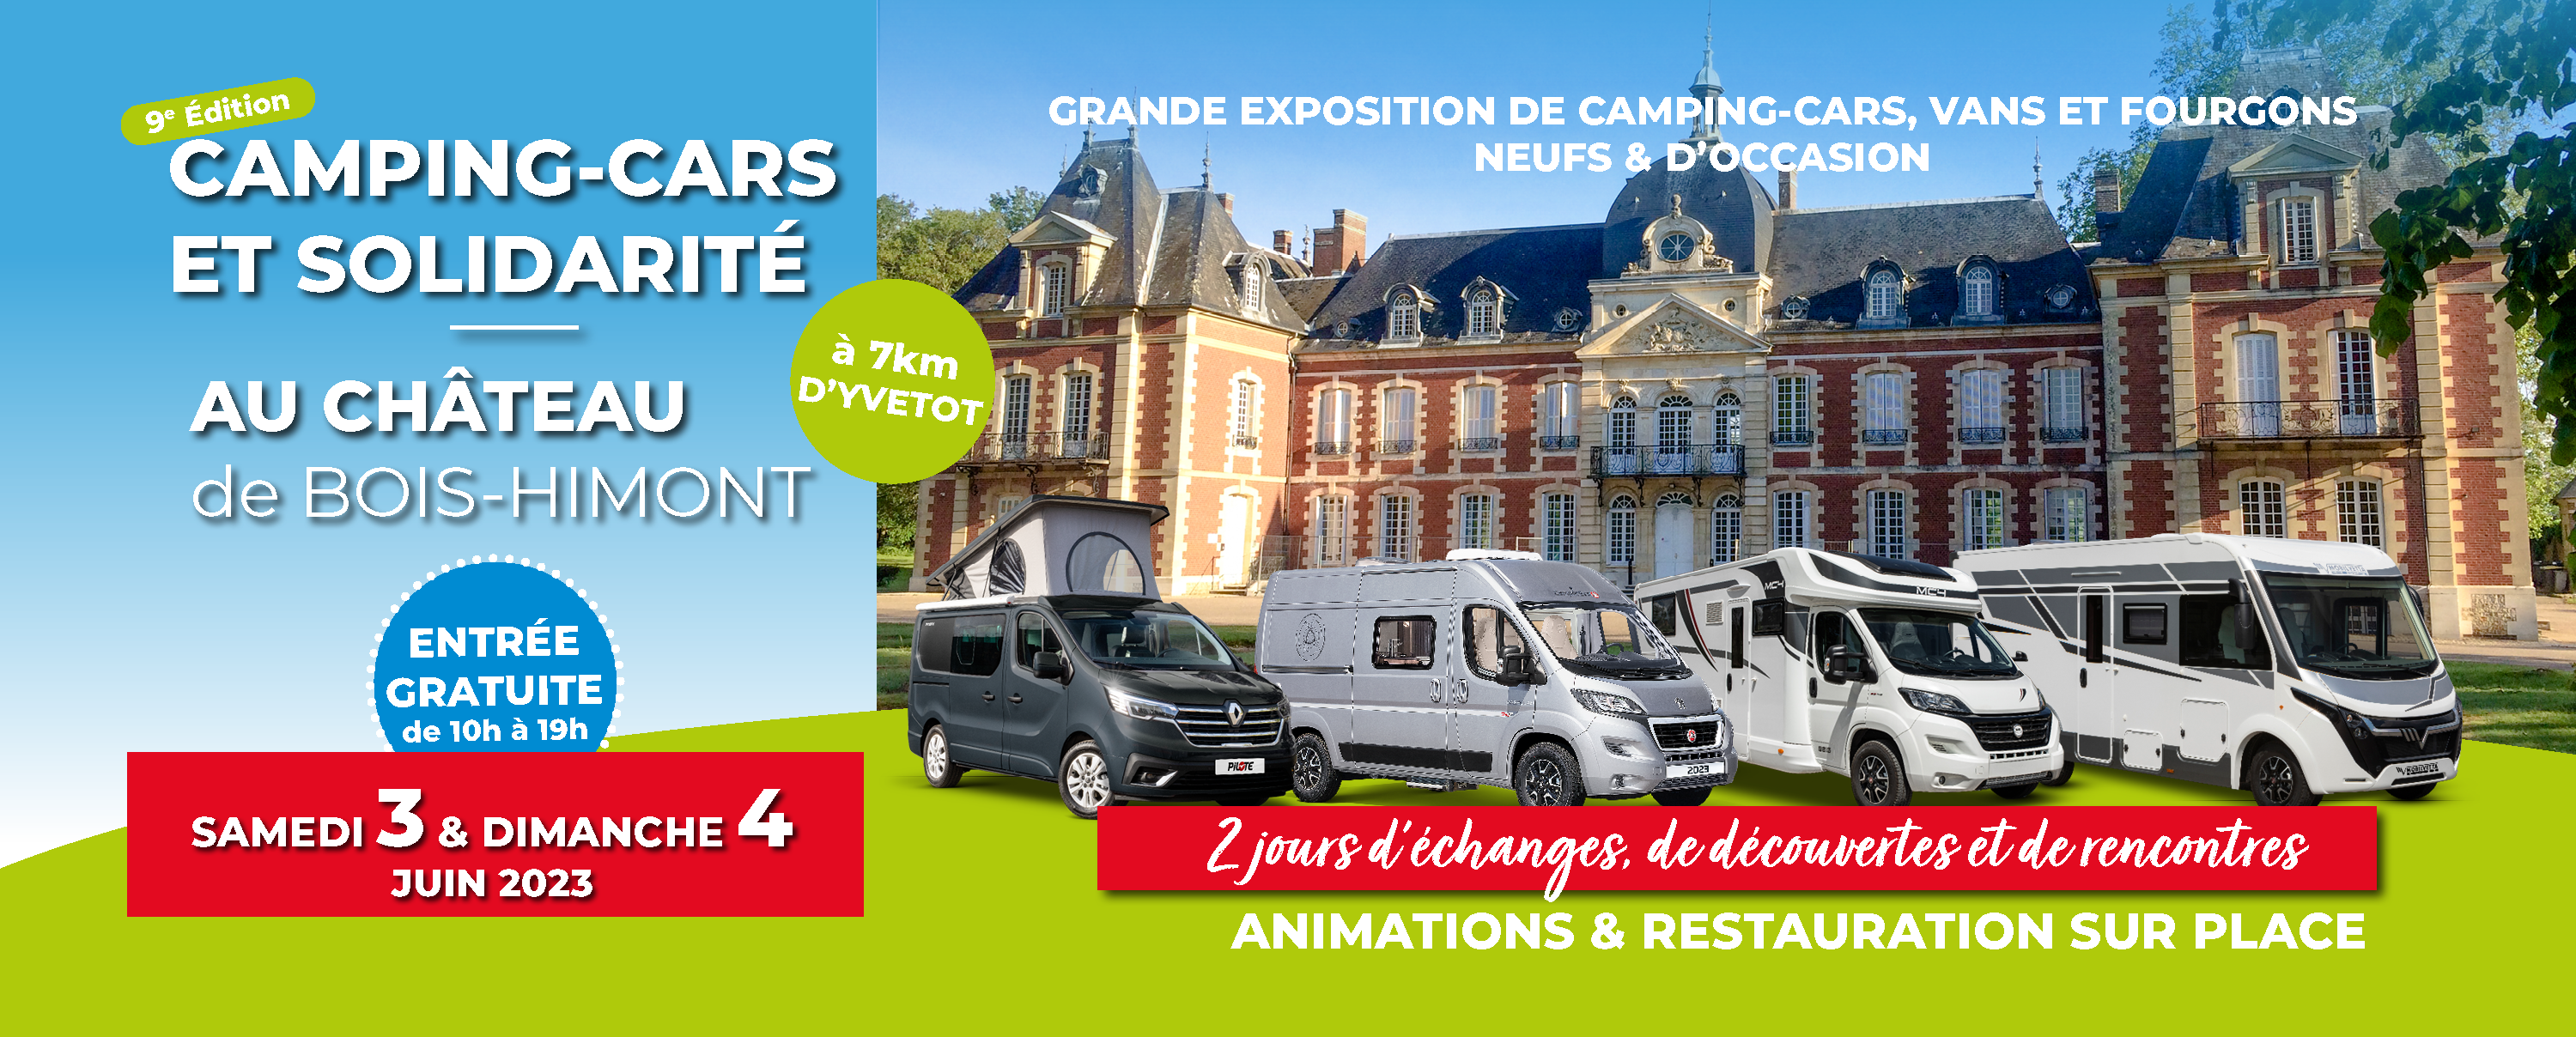 Festival camping-cars et solidarité au château 2023 : 3 et 4 juin 2023